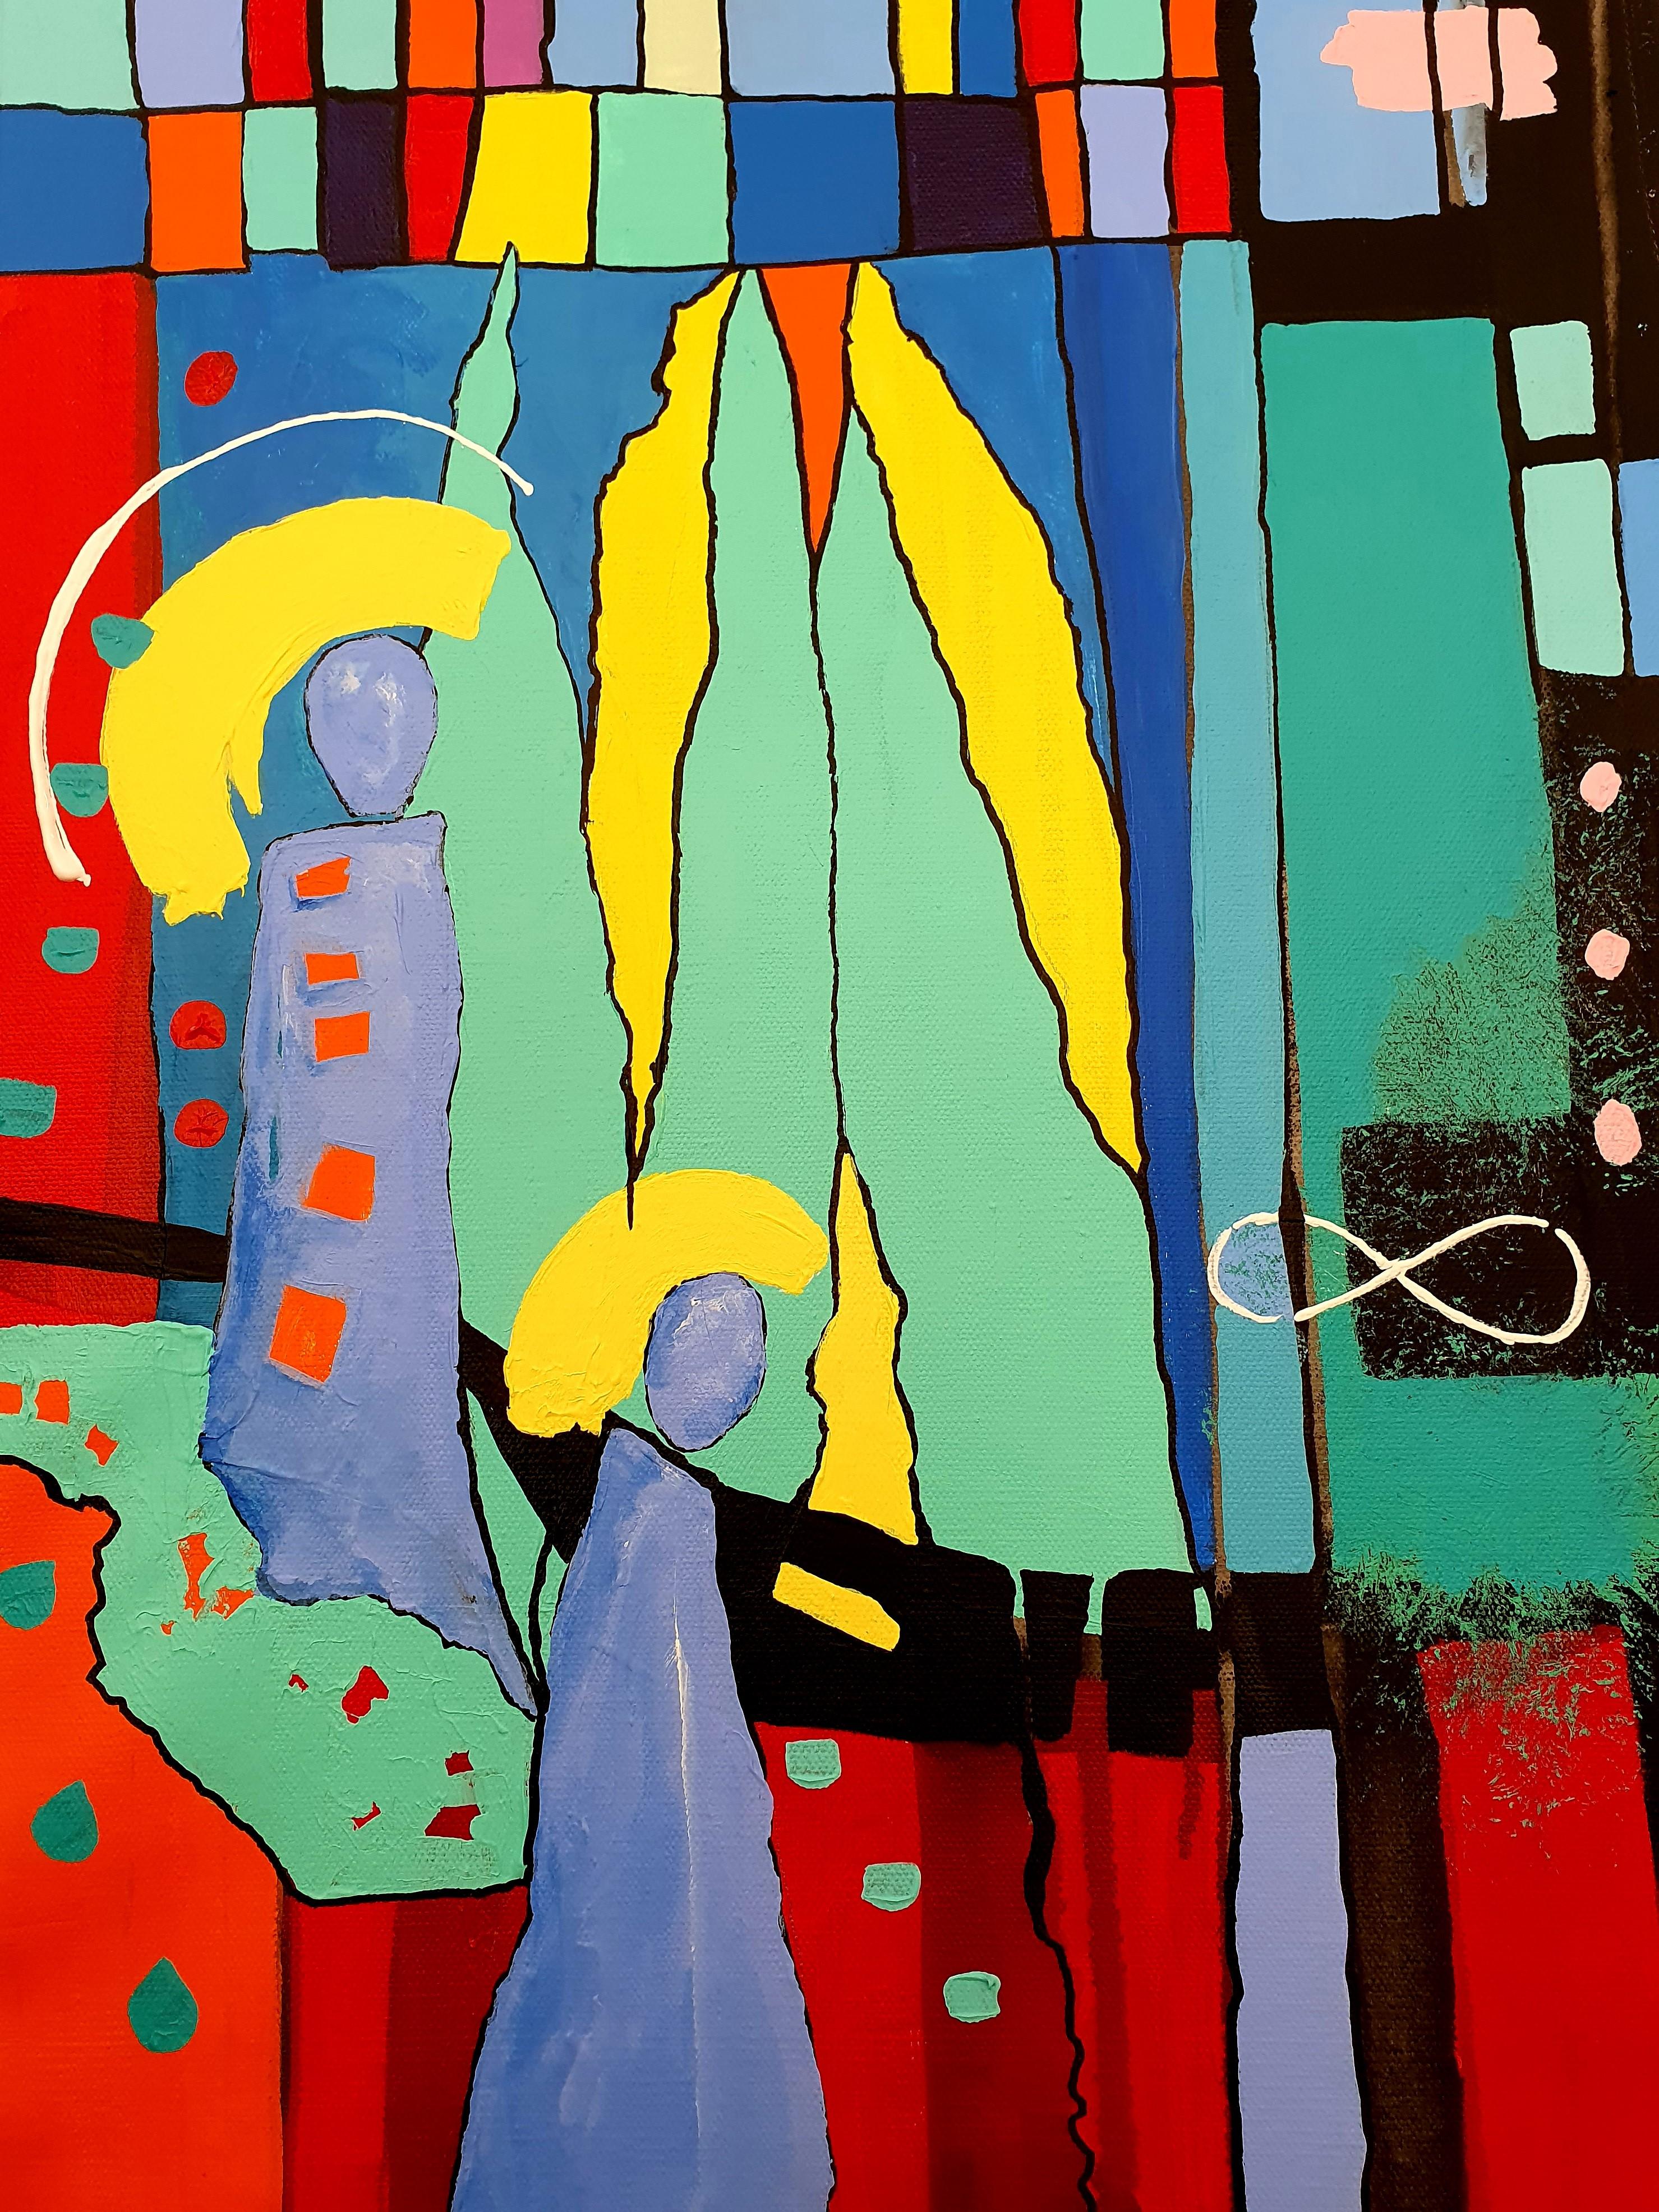 Ich bin König! - Bunte, auffällige, moderne, abstrakte, eindrucksvolle Investment-Intent- Joy (Abstrakter Expressionismus), Painting, von Karnish Art